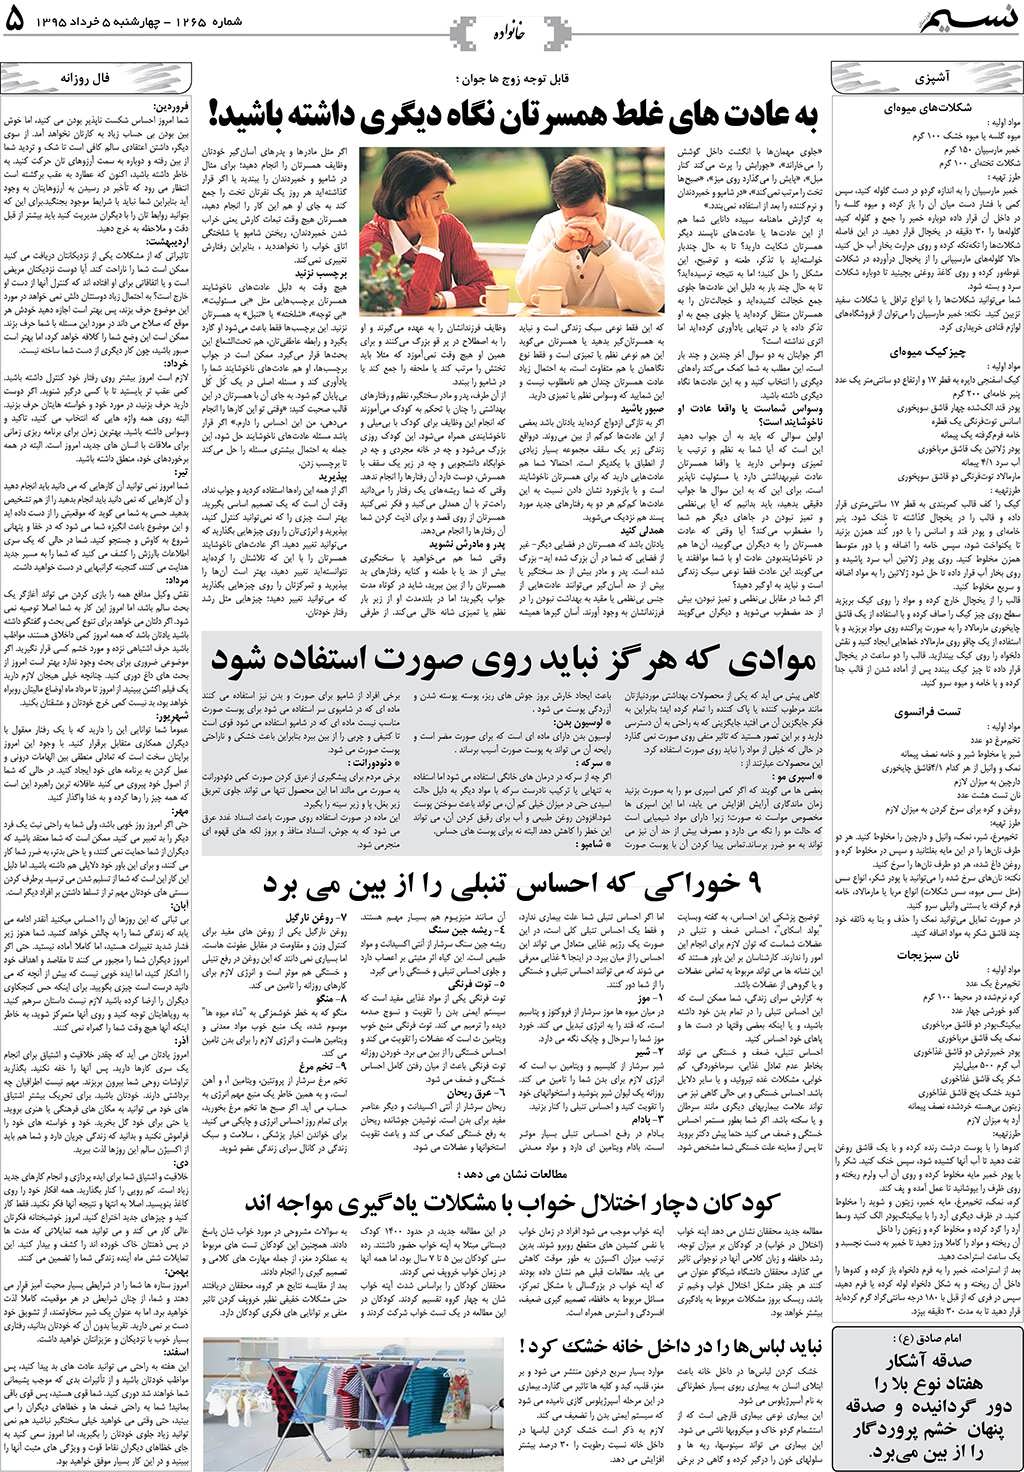 صفحه خانواده روزنامه نسیم شماره 1265